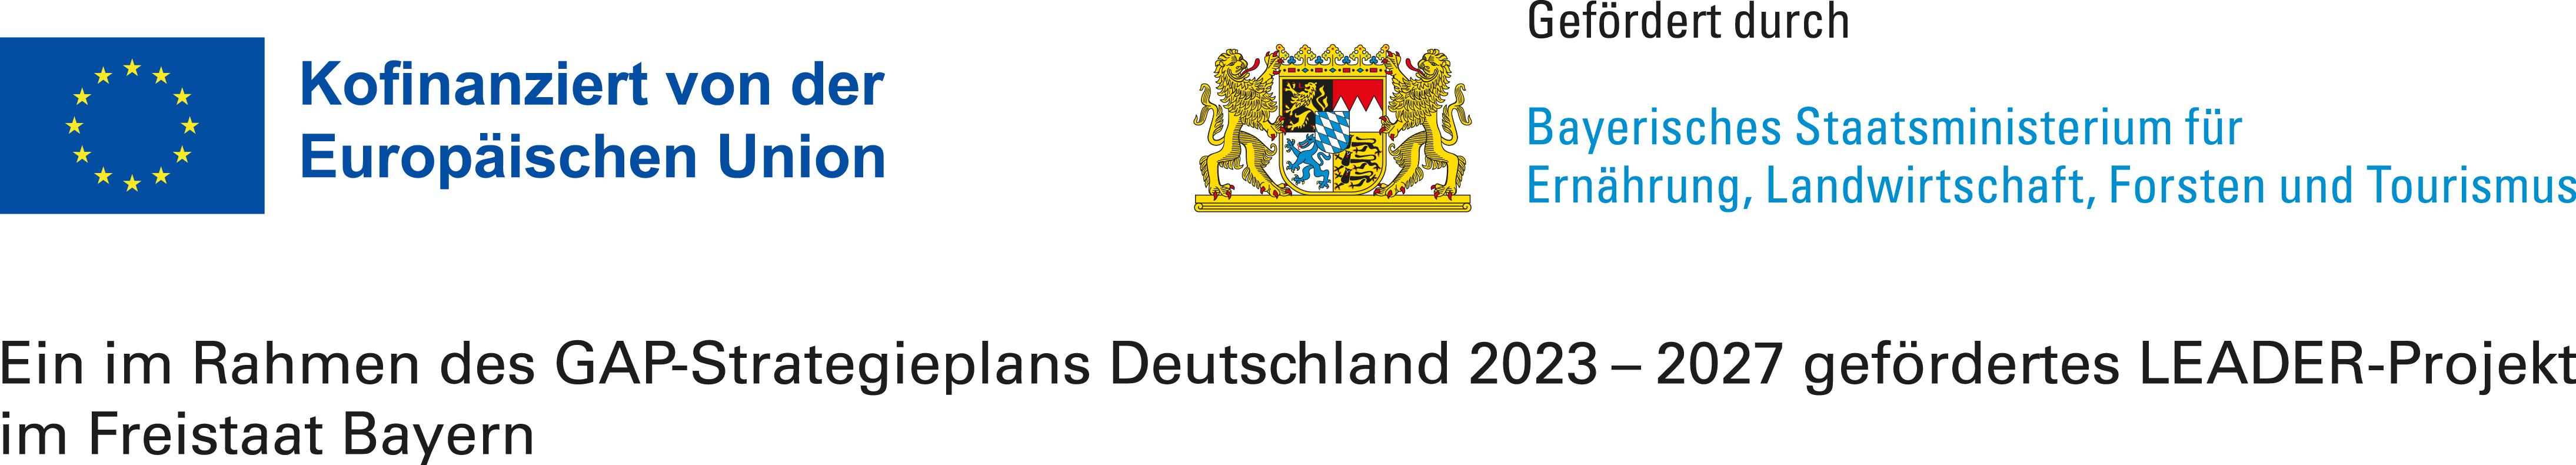 Ein im Rahmen des GAP-Strategieplans Deutschland 2023 - 2027 gefördertes LEADER-Projekt im Freistaat Bayern